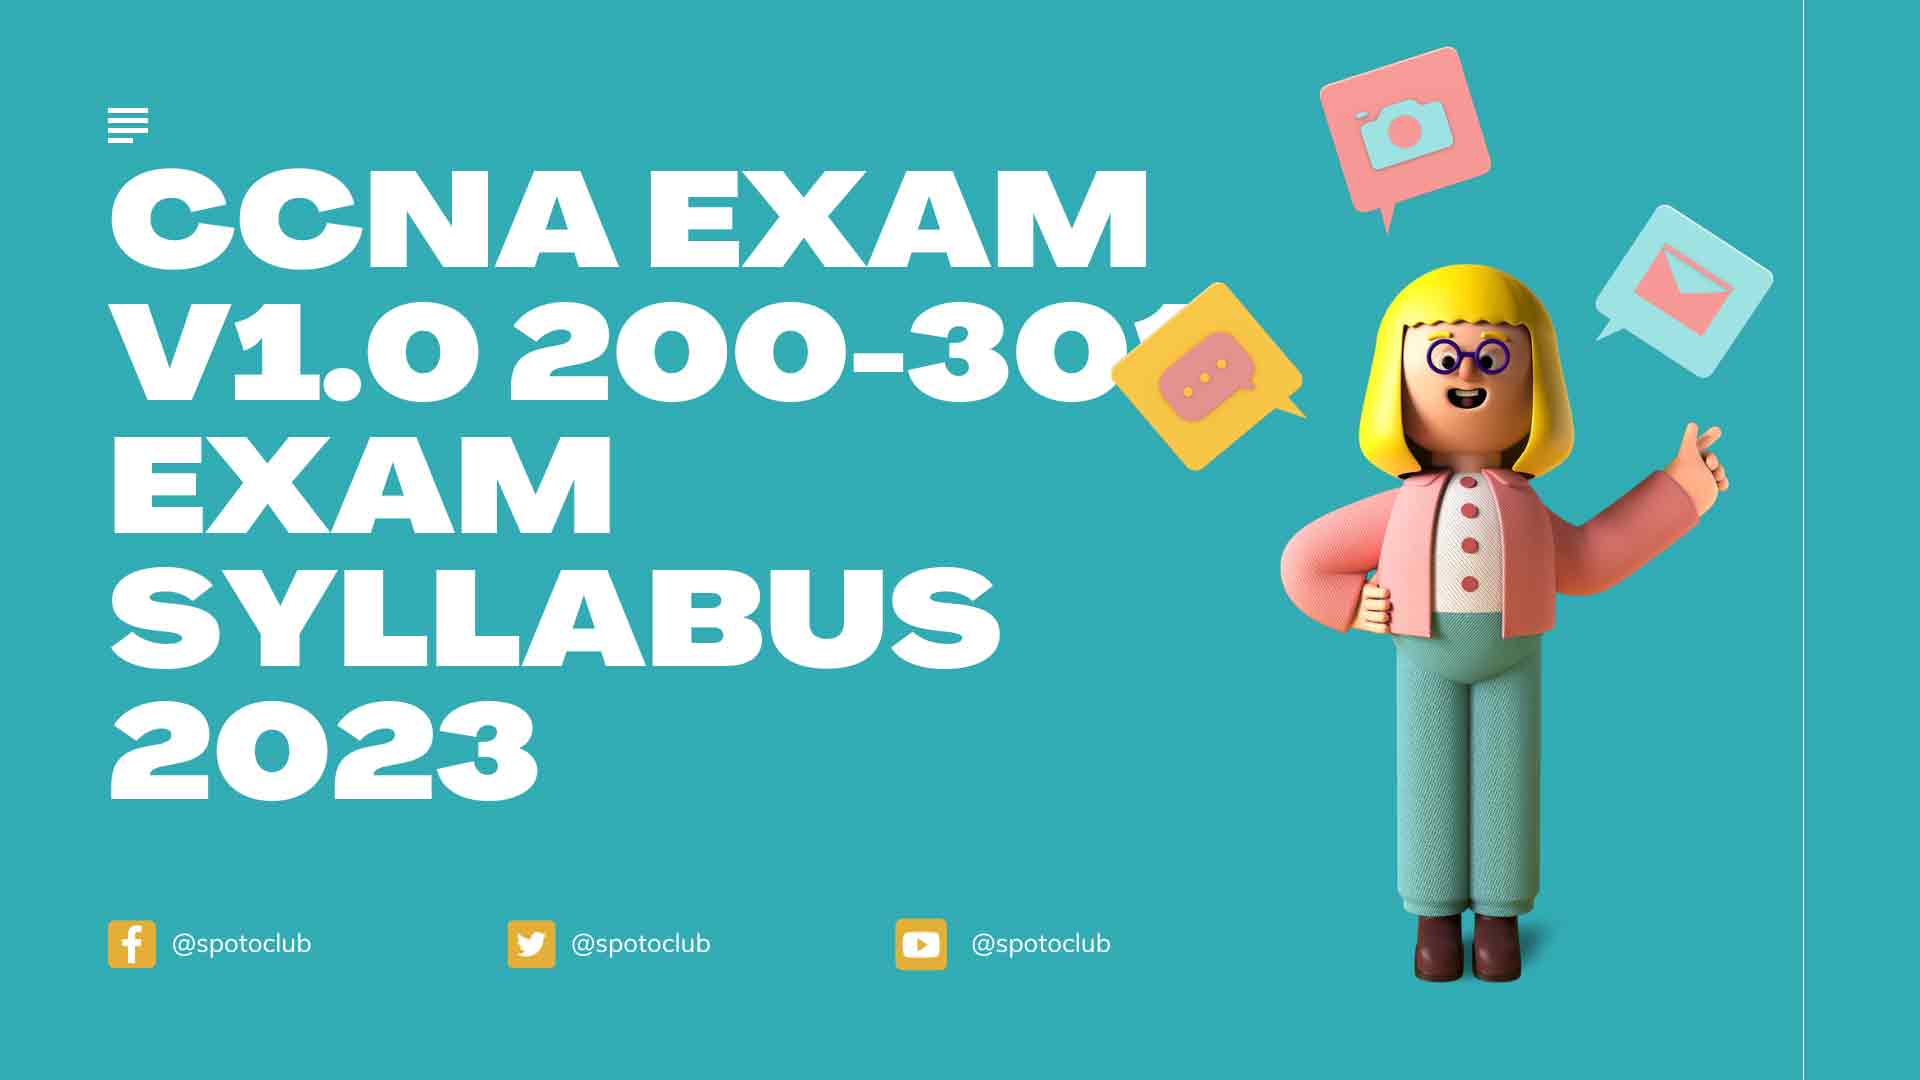 CCNA Exam v1.0 200-301 Exam Syllabus